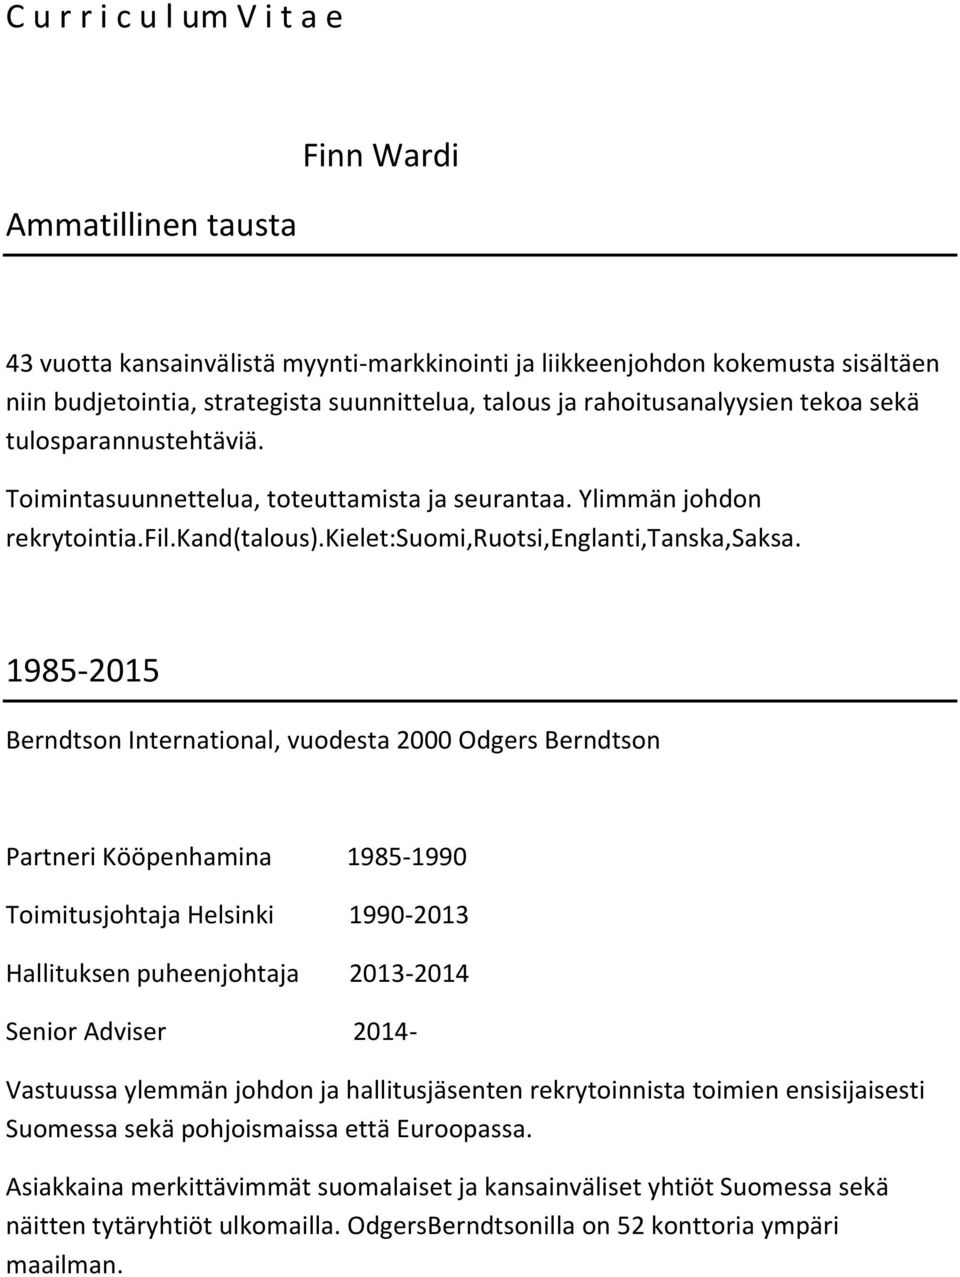 1985-2015 Berndtson International, vuodesta 2000 Odgers Berndtson Partneri Kööpenhamina 1985-1990 Toimitusjohtaja Helsinki 1990-2013 Hallituksen puheenjohtaja 2013-2014 Senior Adviser 2014- Vastuussa